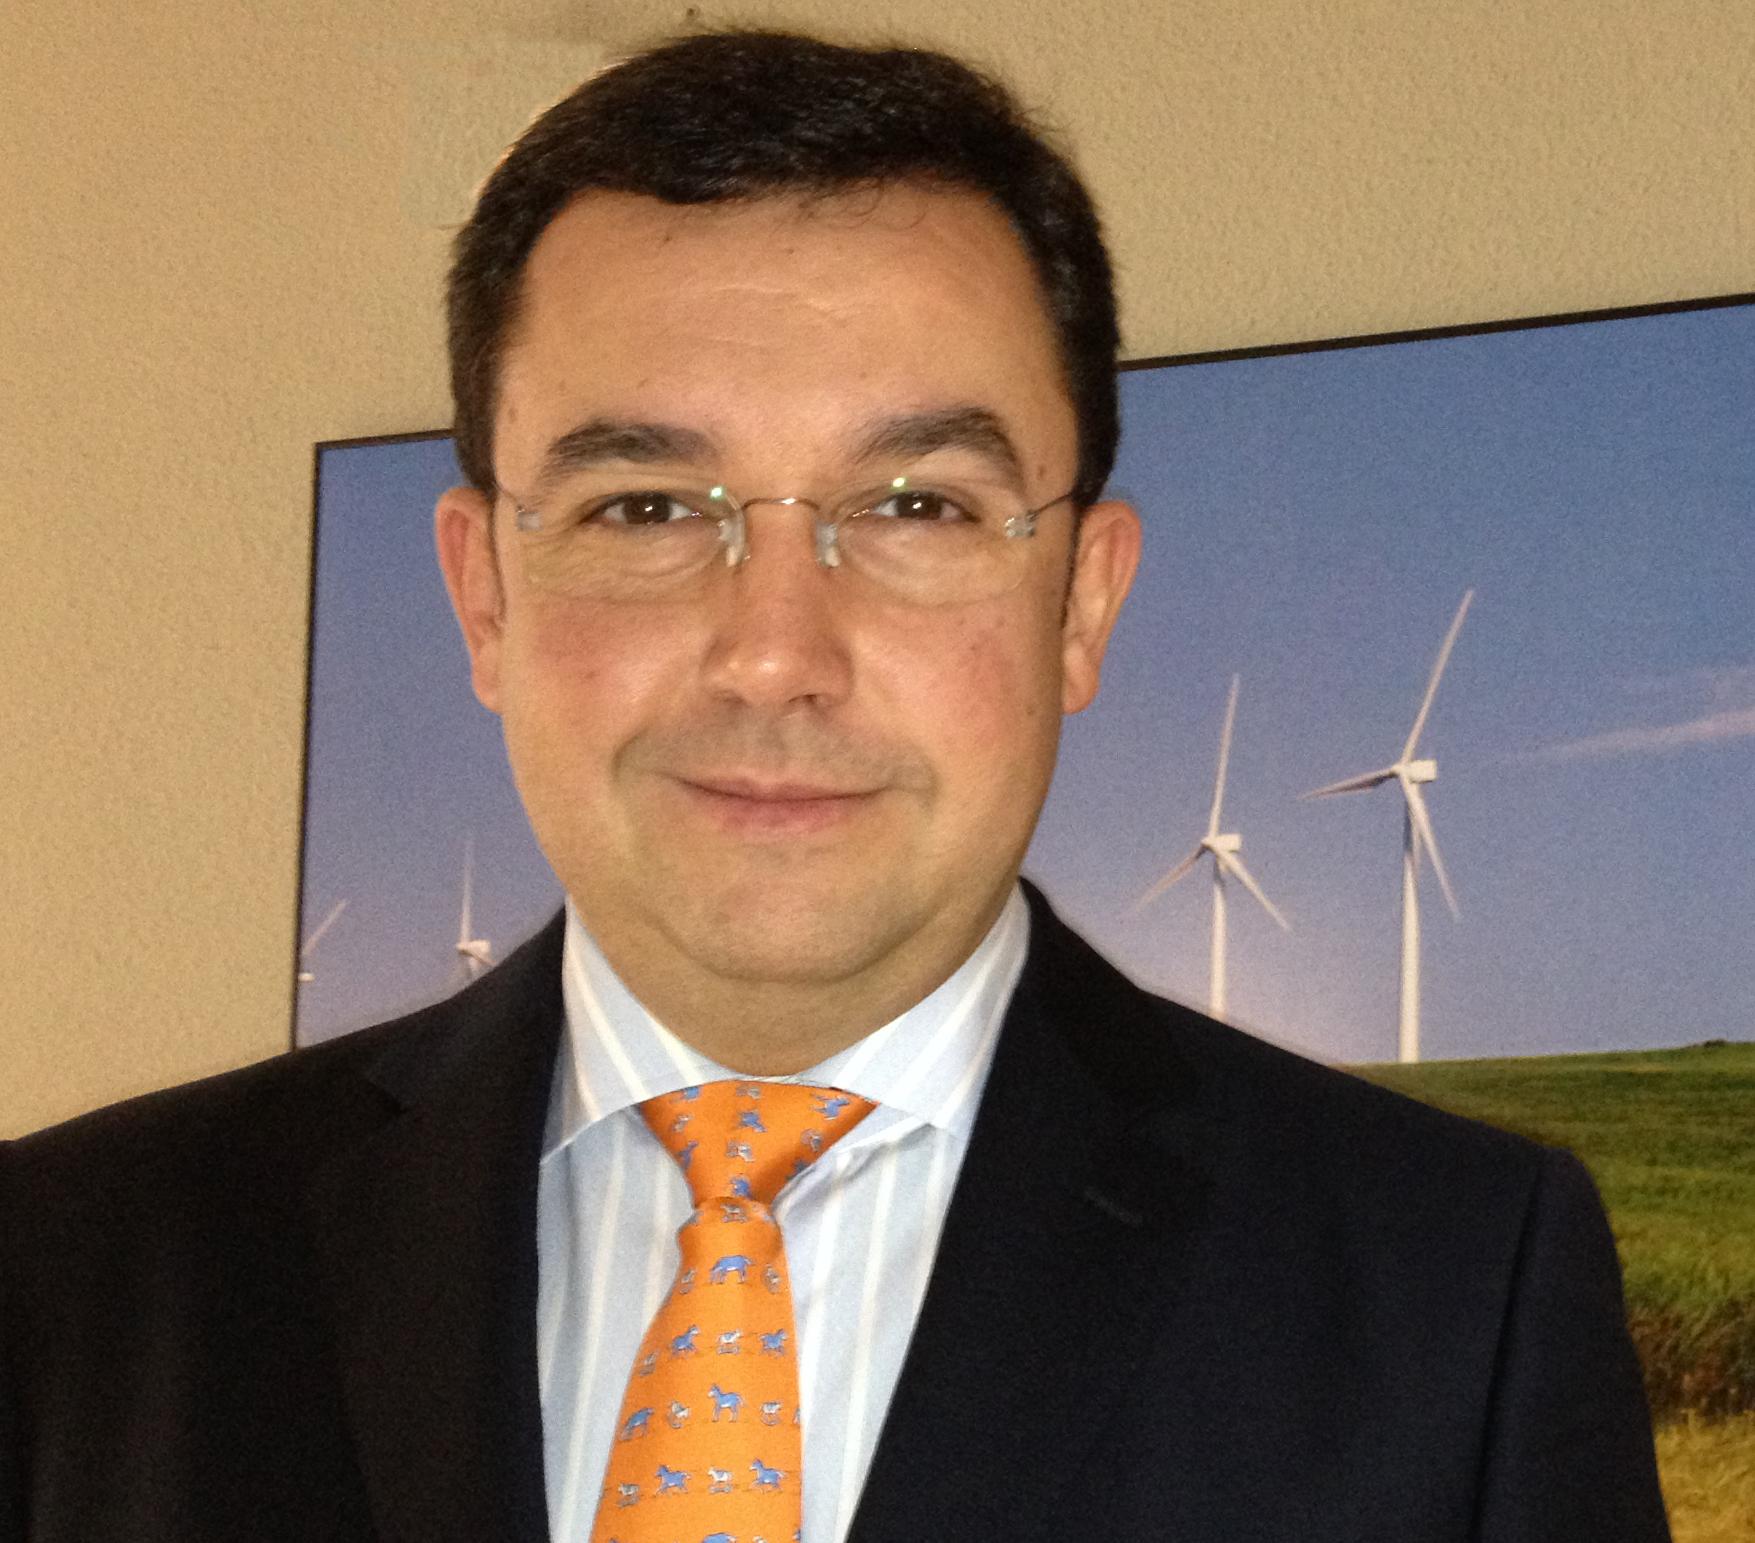 Luis Polo, director general de AEE: “Lo que está en juego con la reforma energética es el futuro de la tecnología eólica española”